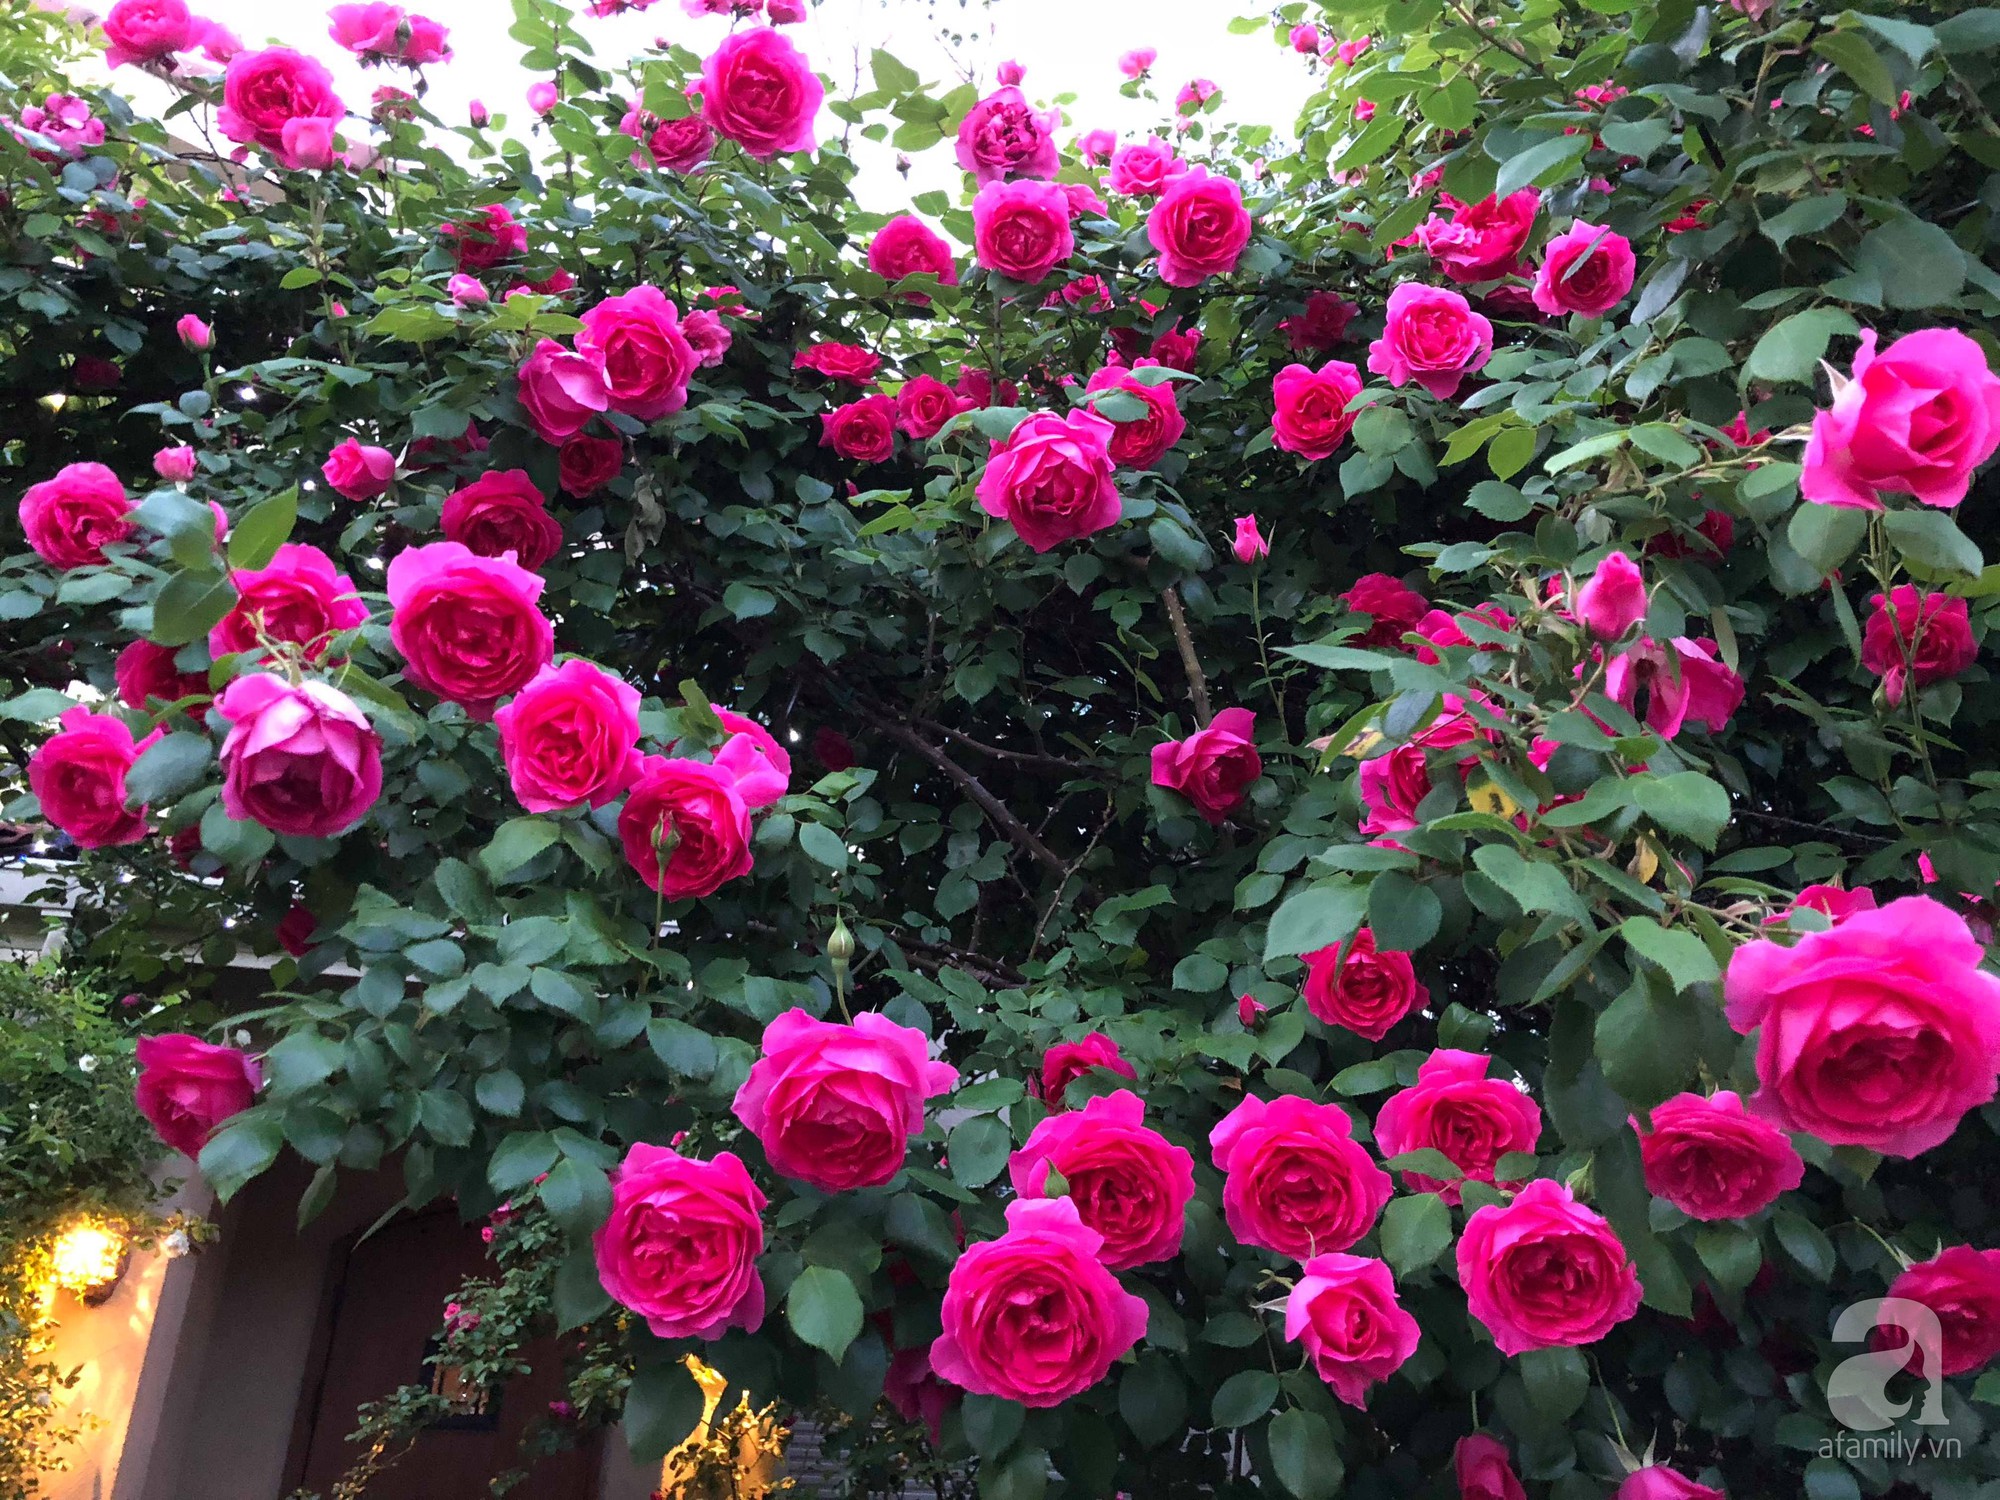 Khu vườn hoa hồng trước nhà đẹp như truyện cổ tích của người đàn ông Việt ở Nhật - Ảnh 8.